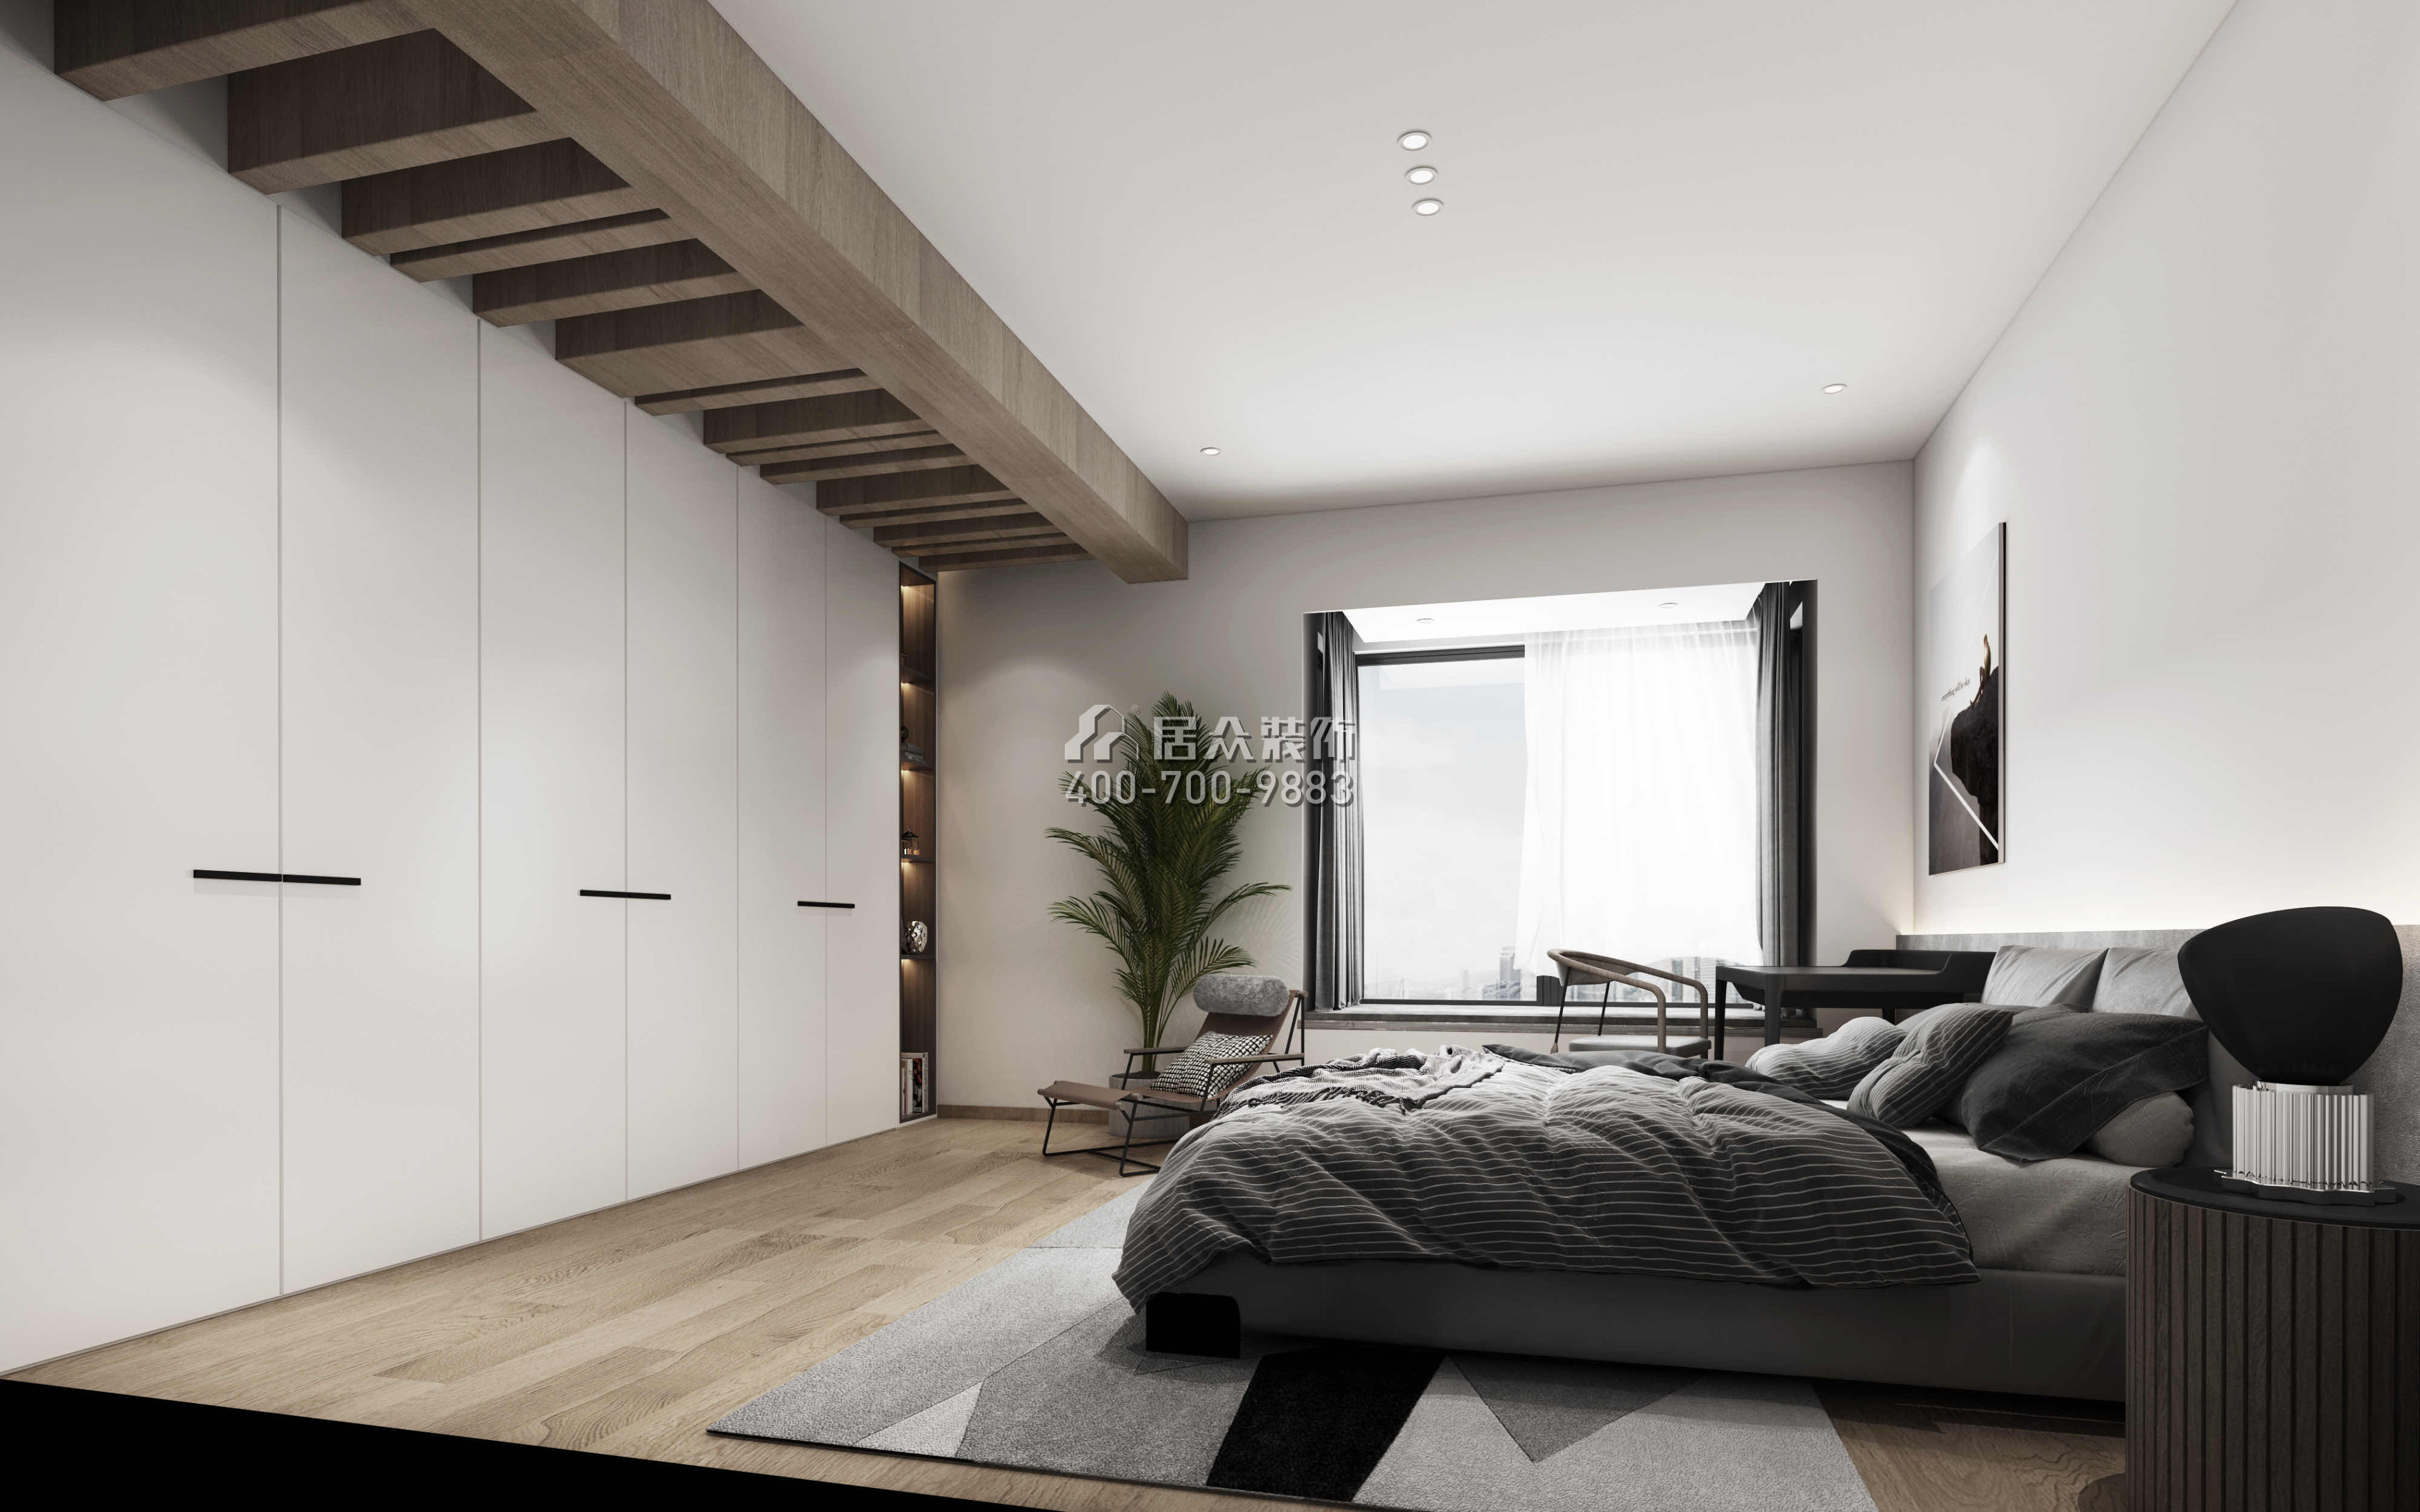 天鹅堡二期245平方米现代简约风格平层户型卧室装修效果图